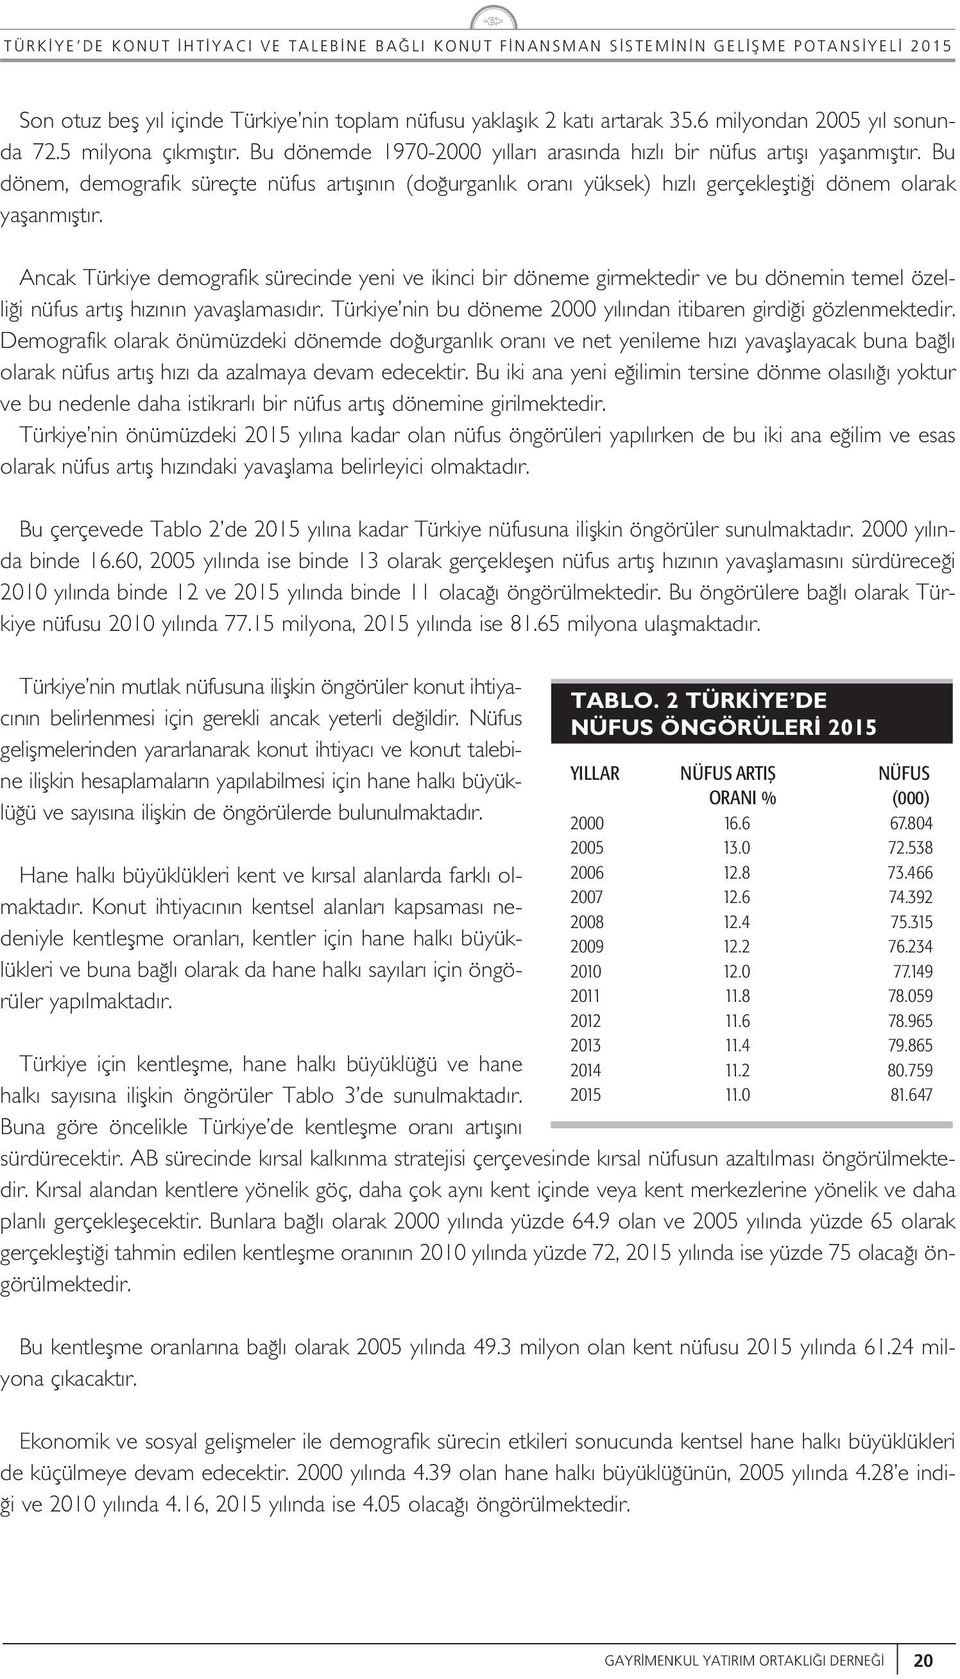 Ancak Türkiye demografik sürecinde yeni ve ikinci bir döneme girmektedir ve b dönemin teme özei i nüfs art f h z n n yavafamas d r. Türkiye nin b döneme 2000 y ndan itibaren girdi i gözenmektedir.